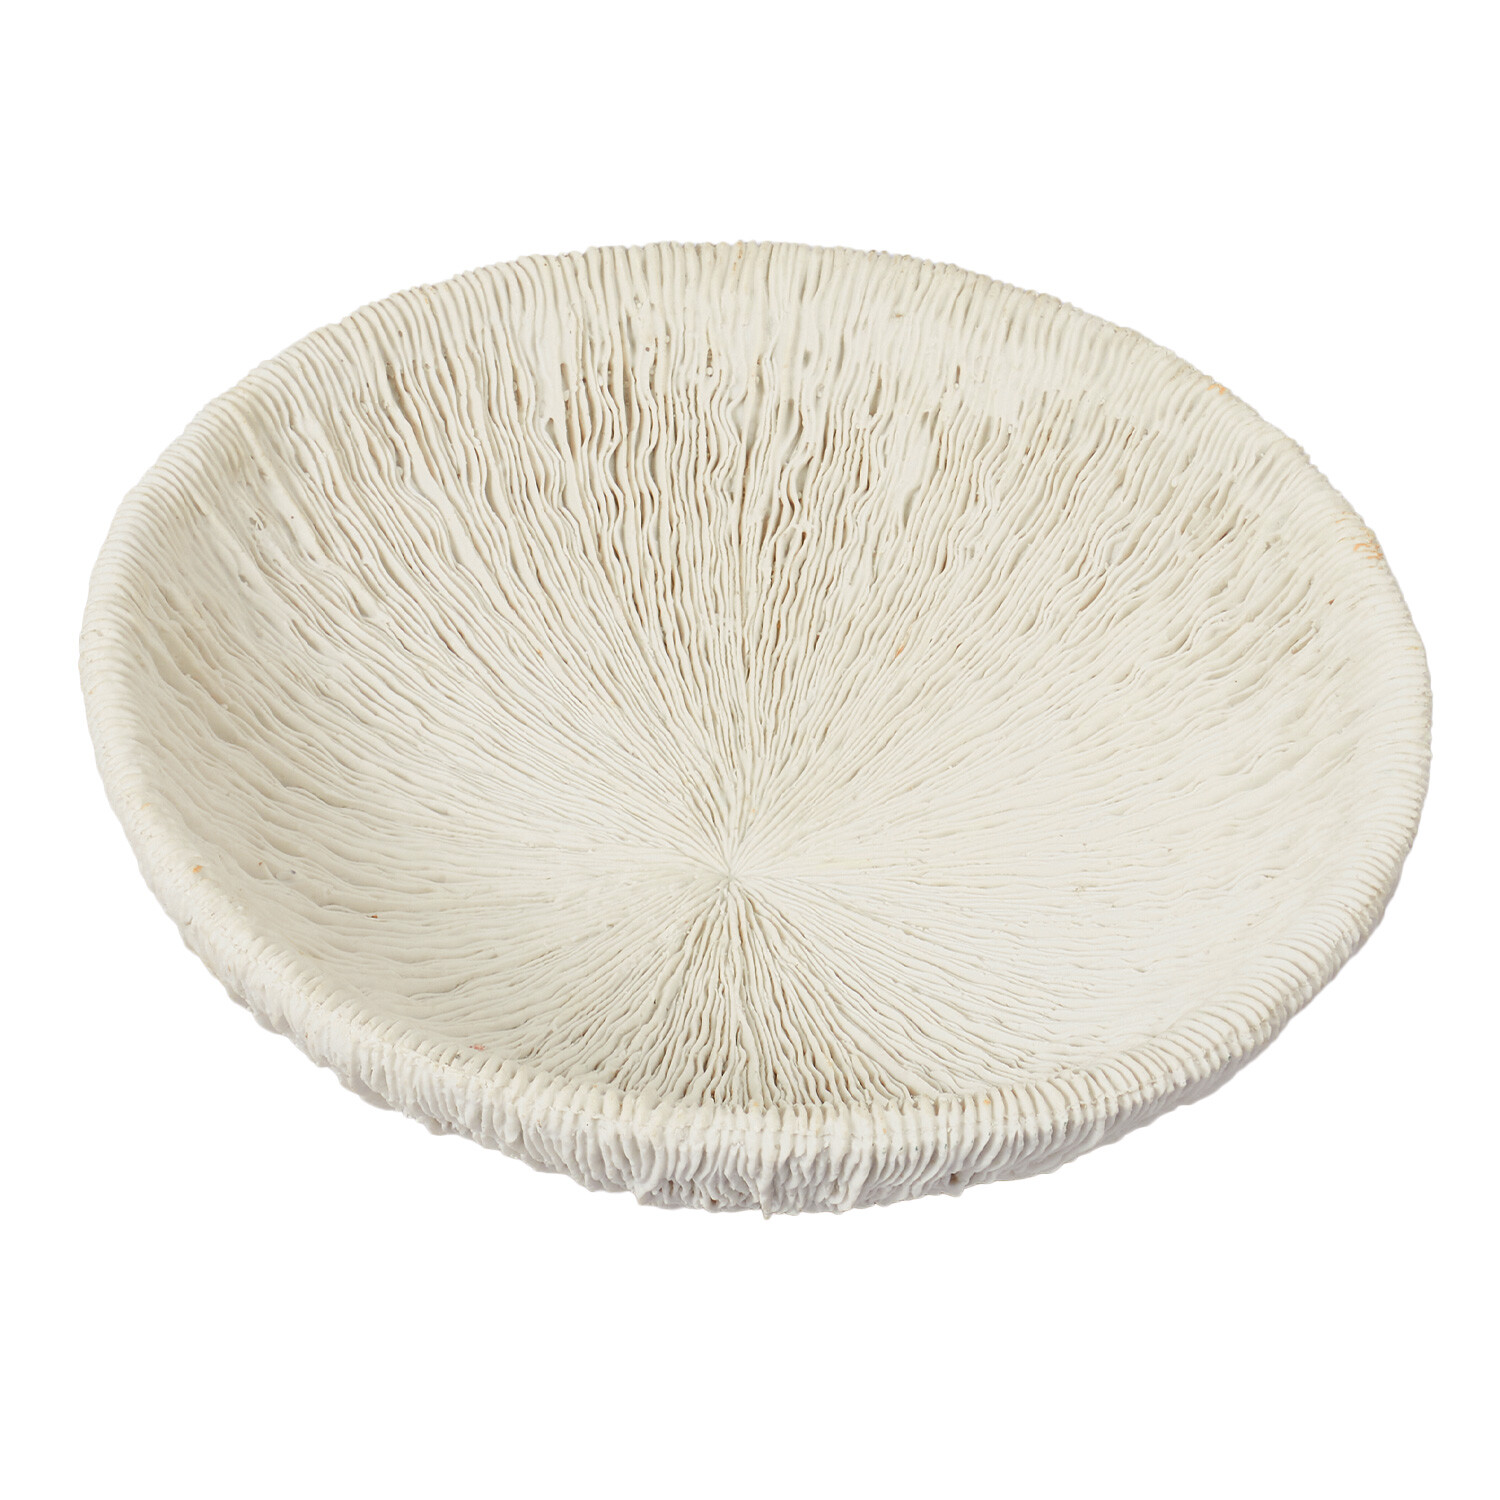 Sofia Textured Bowl - White Image 2